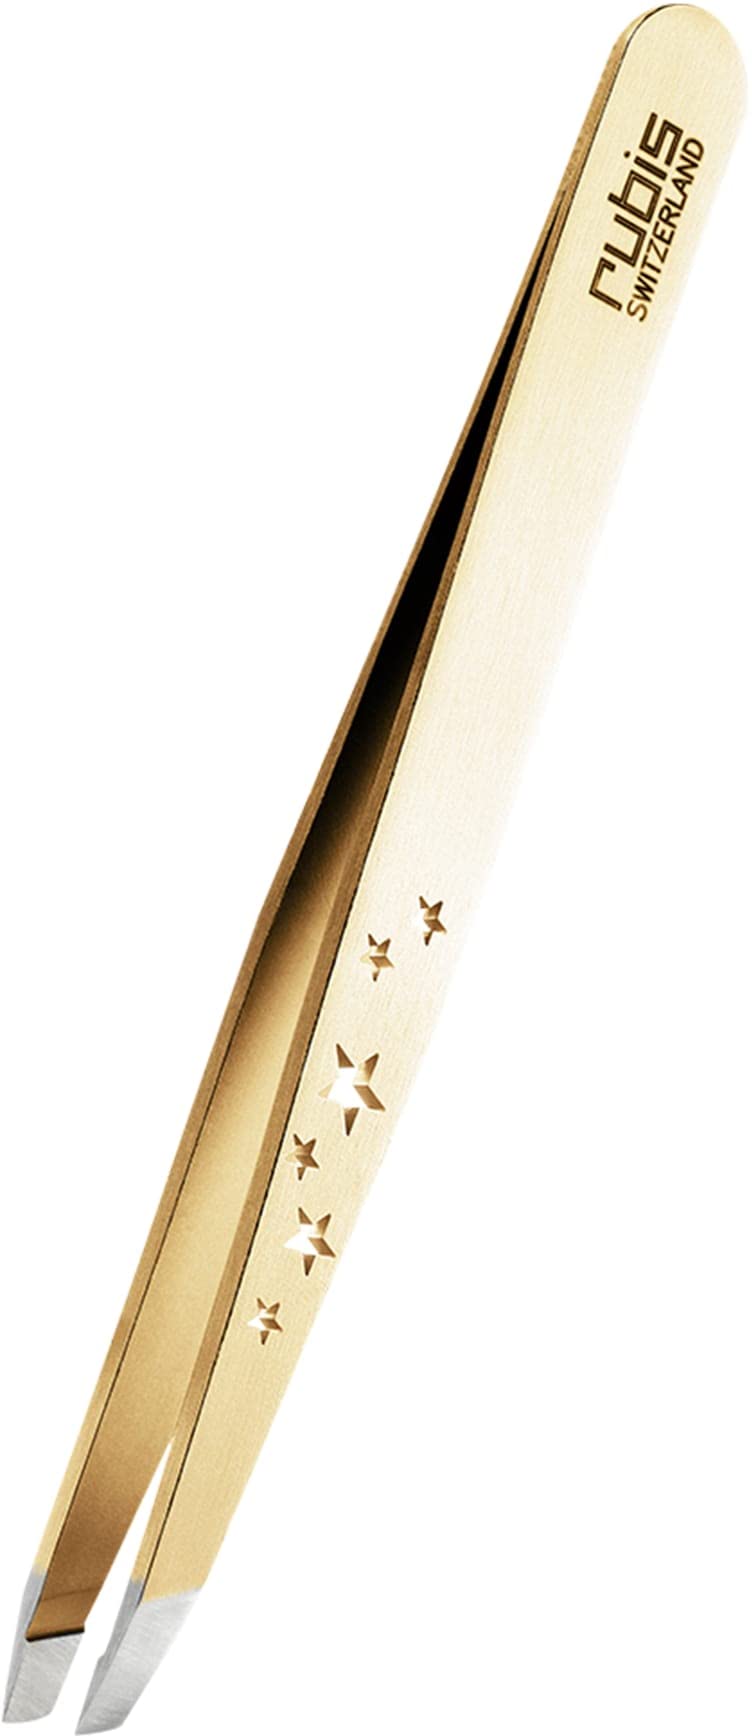 Rubis Pinzette Gold schräg - Six Stars Special Collection - Augenbrauenpinzette mit Stern Gravur